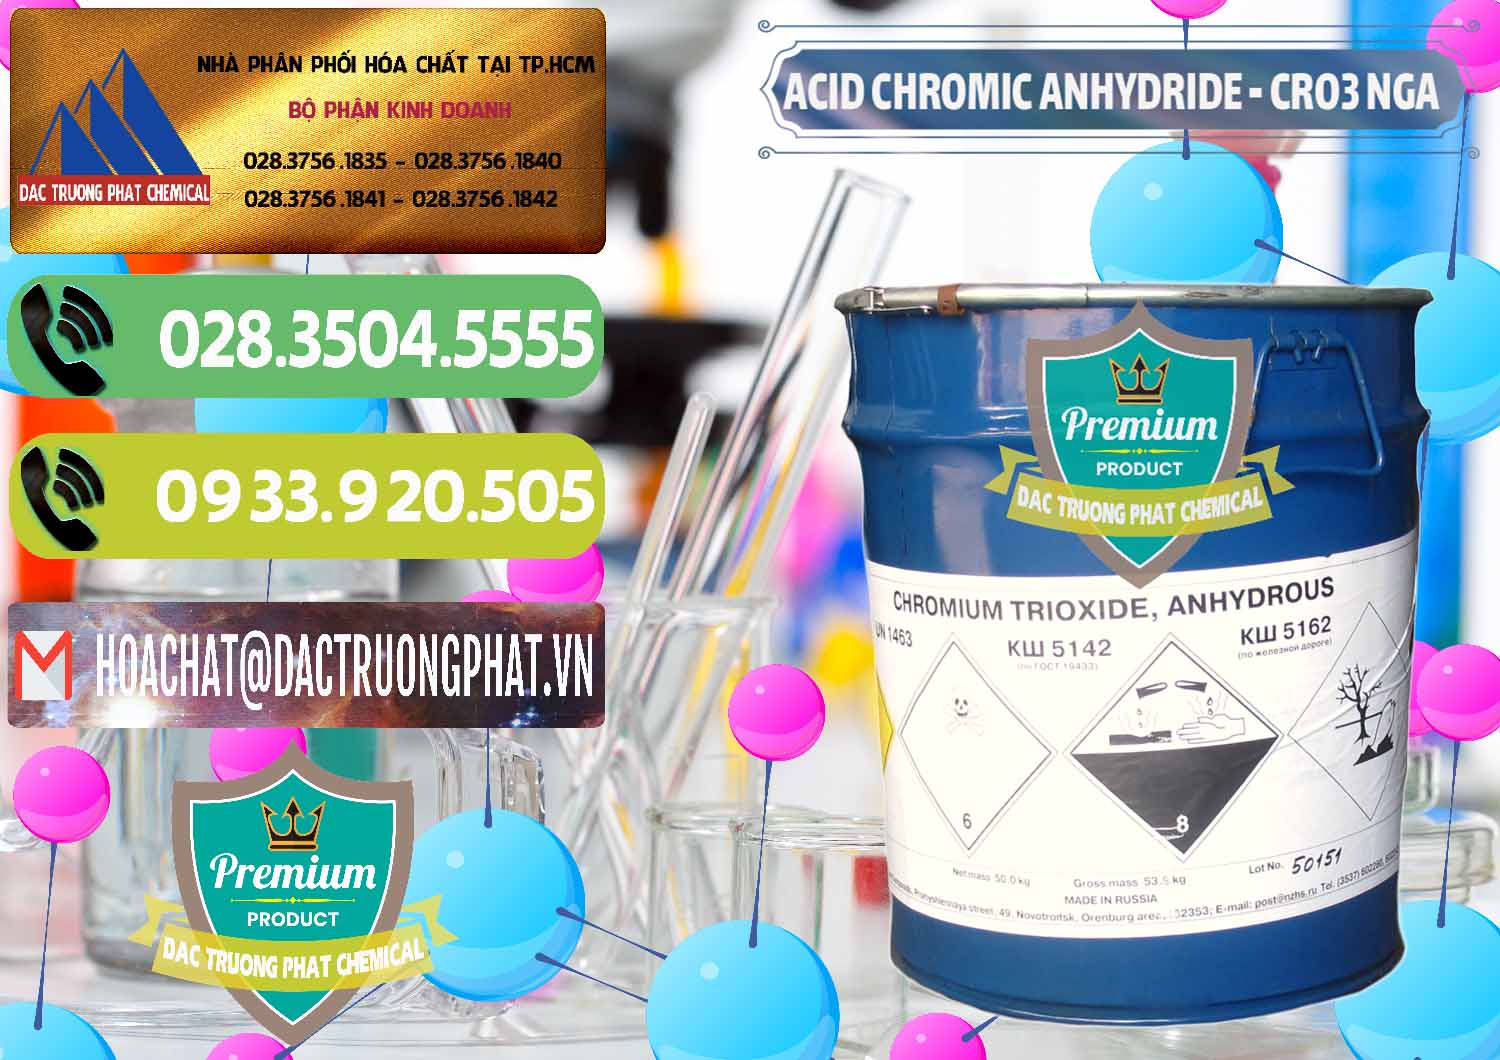 Nơi chuyên bán ( cung cấp ) Acid Chromic Anhydride - Cromic CRO3 Nga Russia - 0006 - Nơi bán _ phân phối hóa chất tại TP.HCM - hoachatmientay.vn